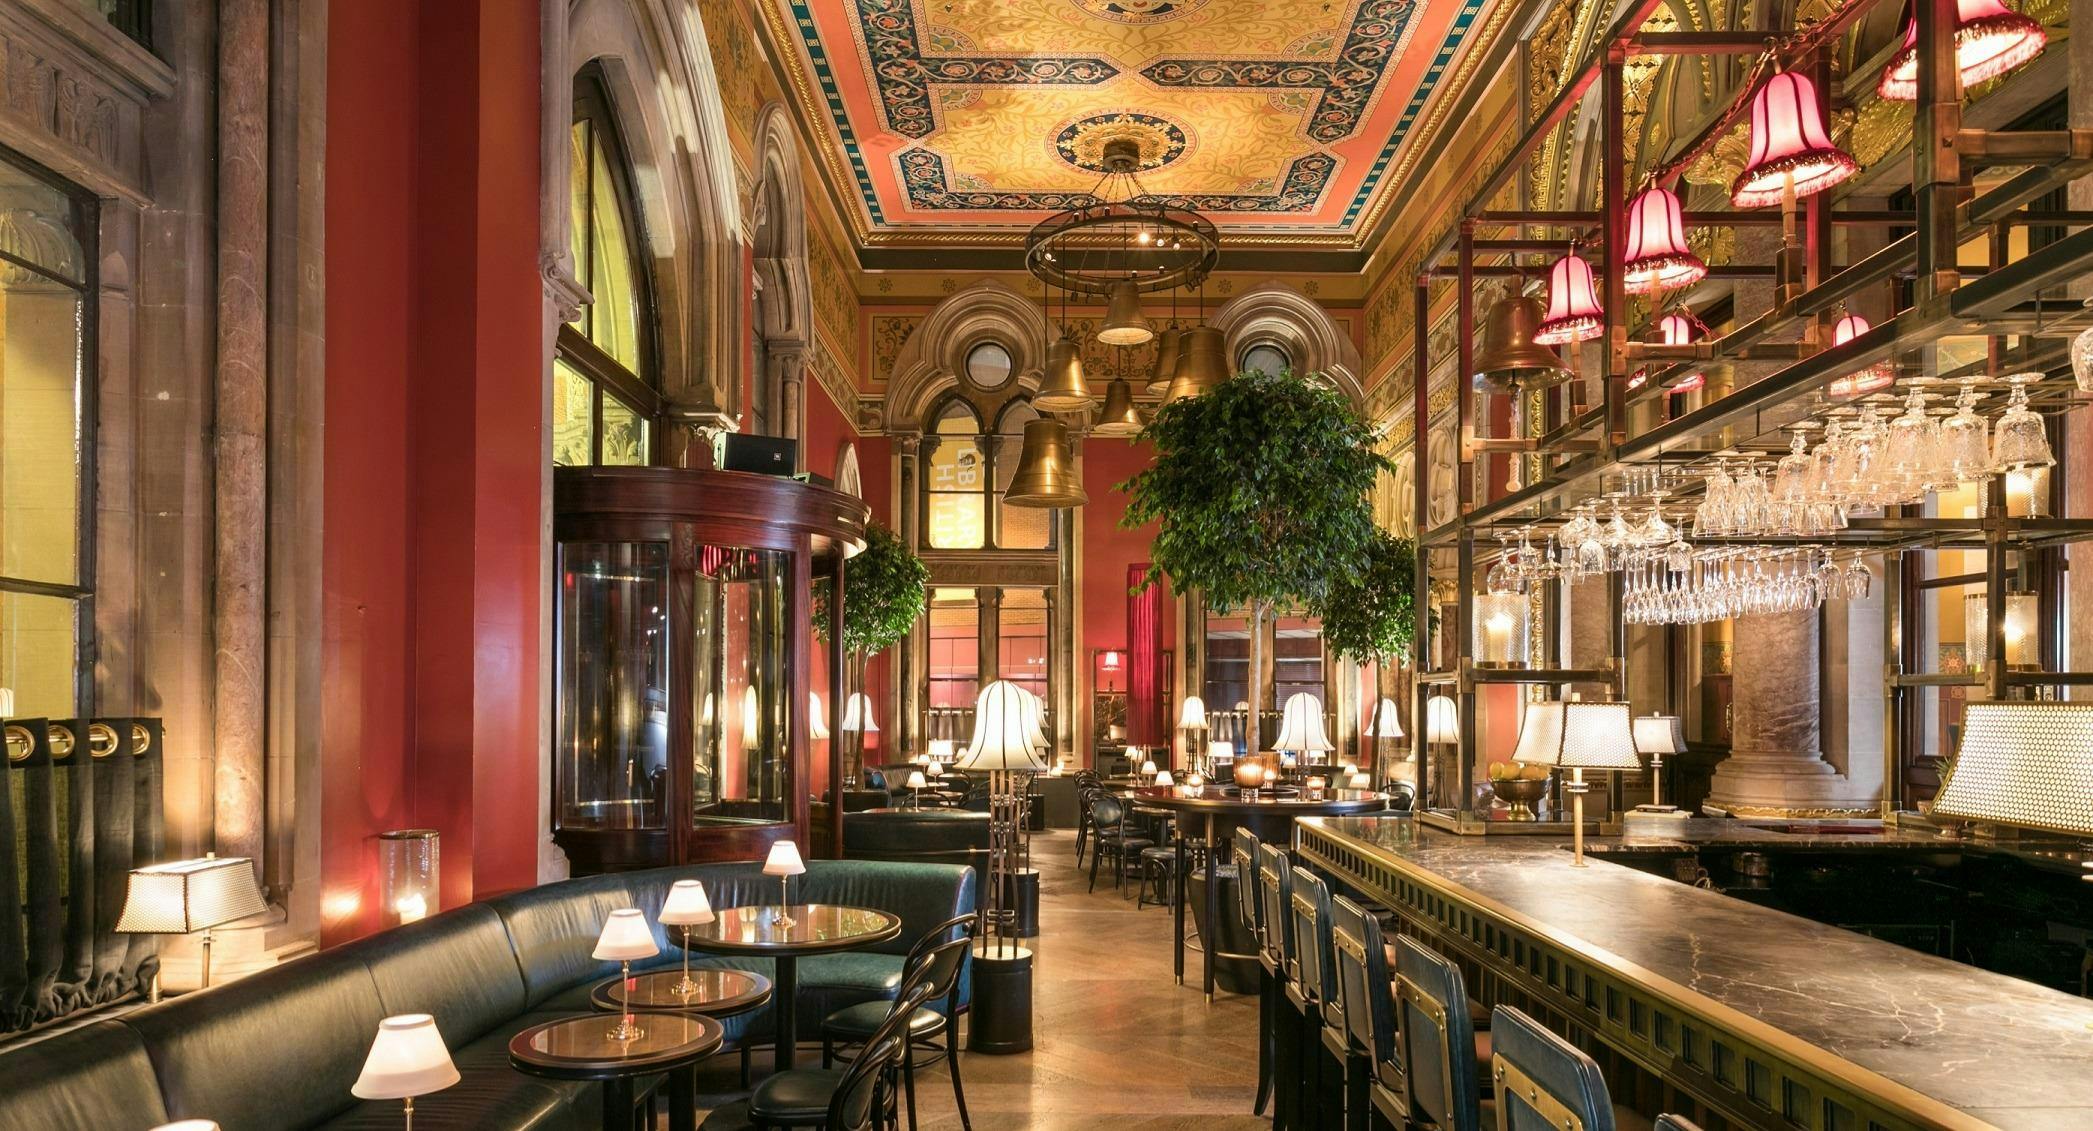 Photo of restaurant The Gilbert Scott in King's Cross, London